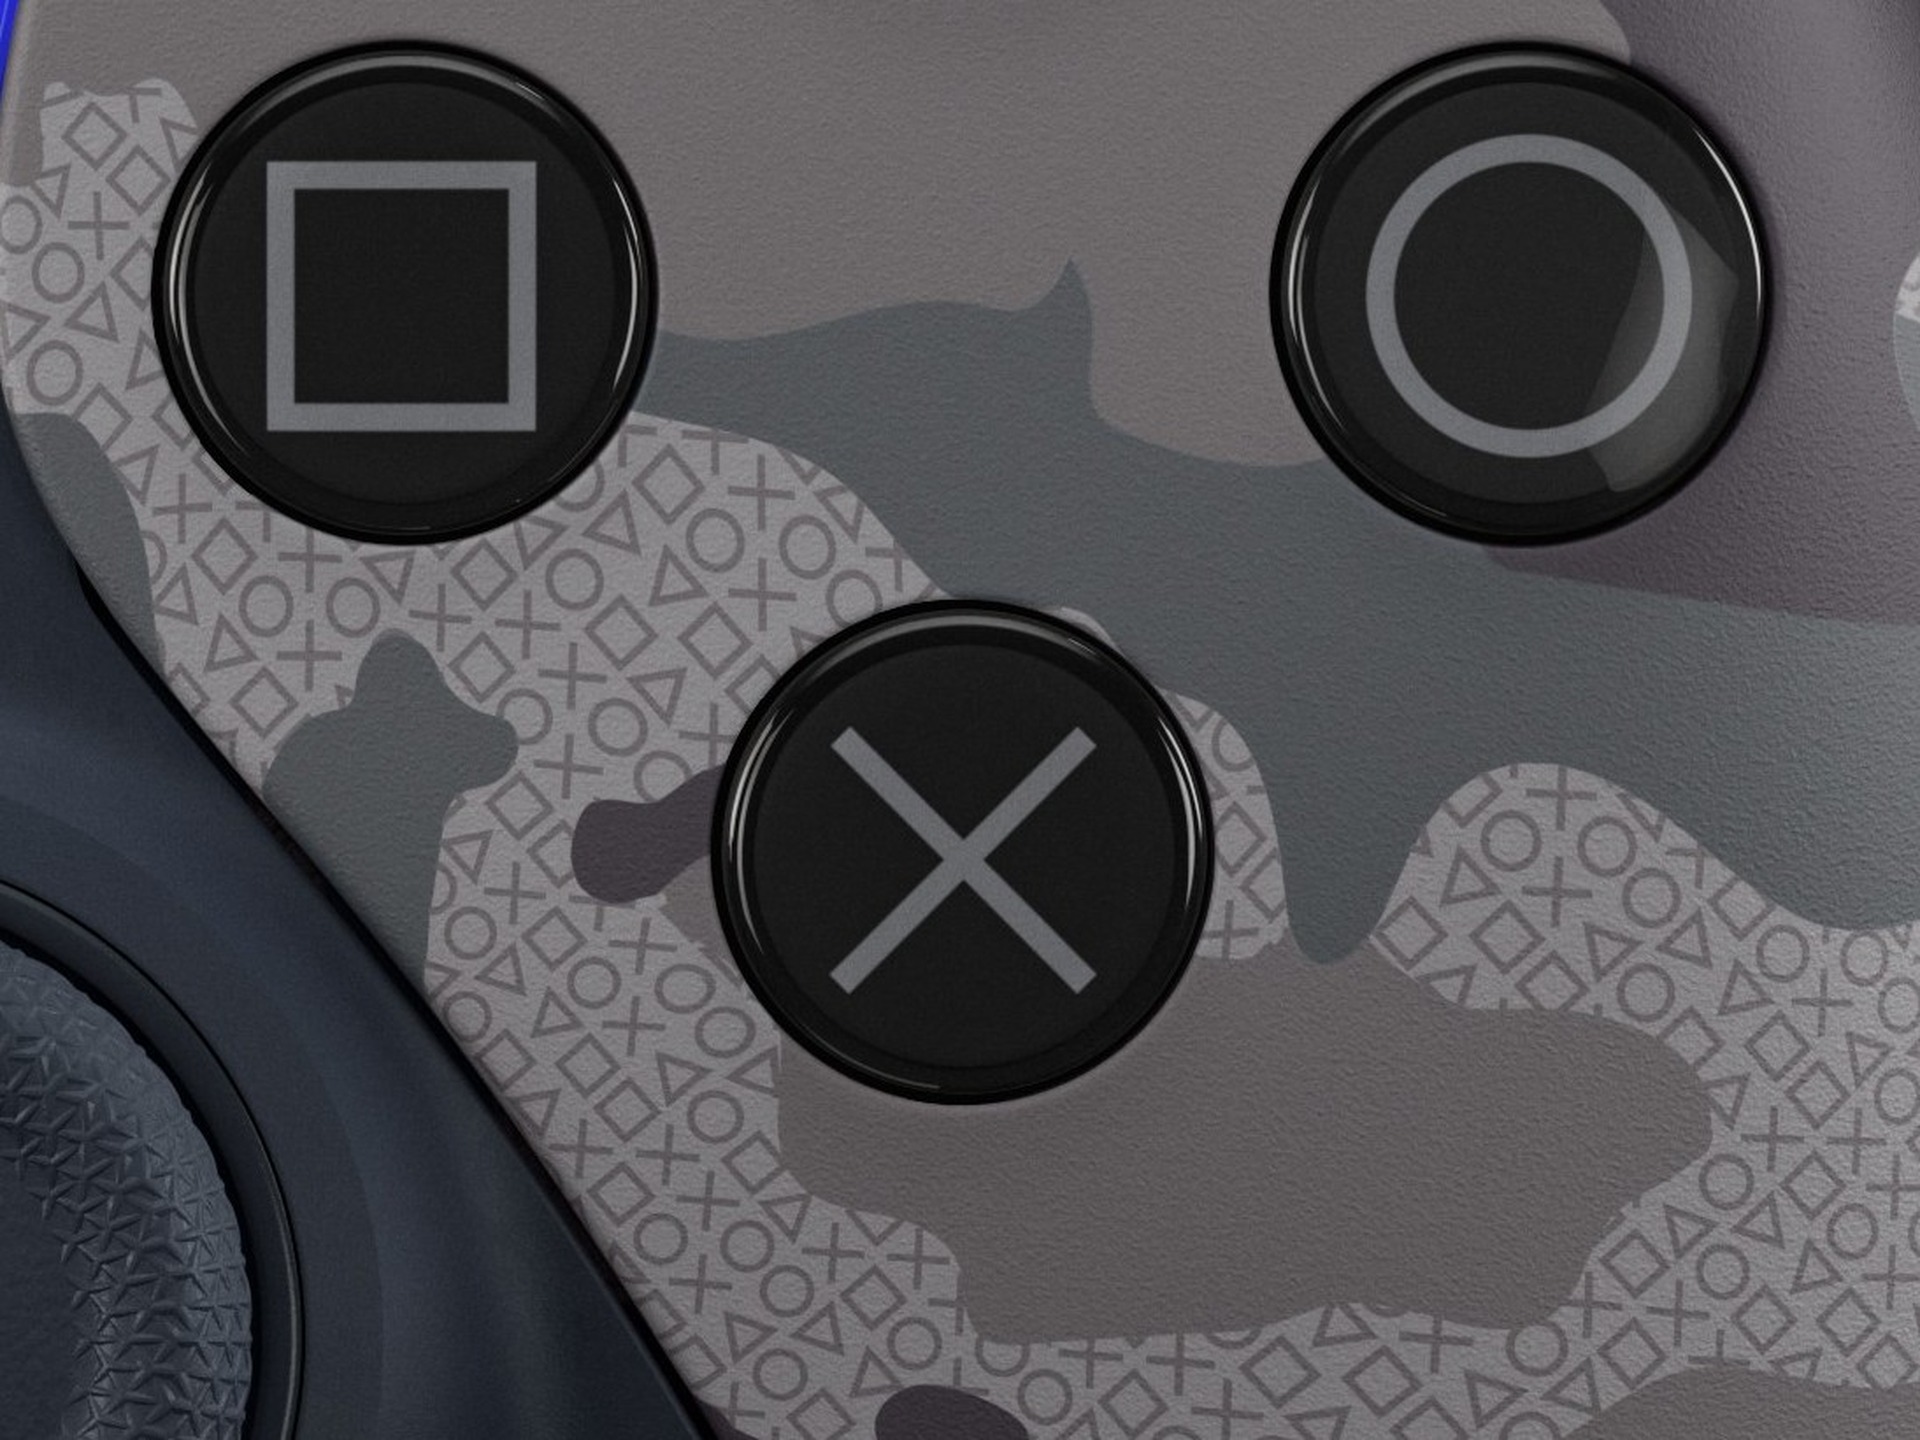 PS5に新色『グレー カモフラージュ』カバー。DualSense